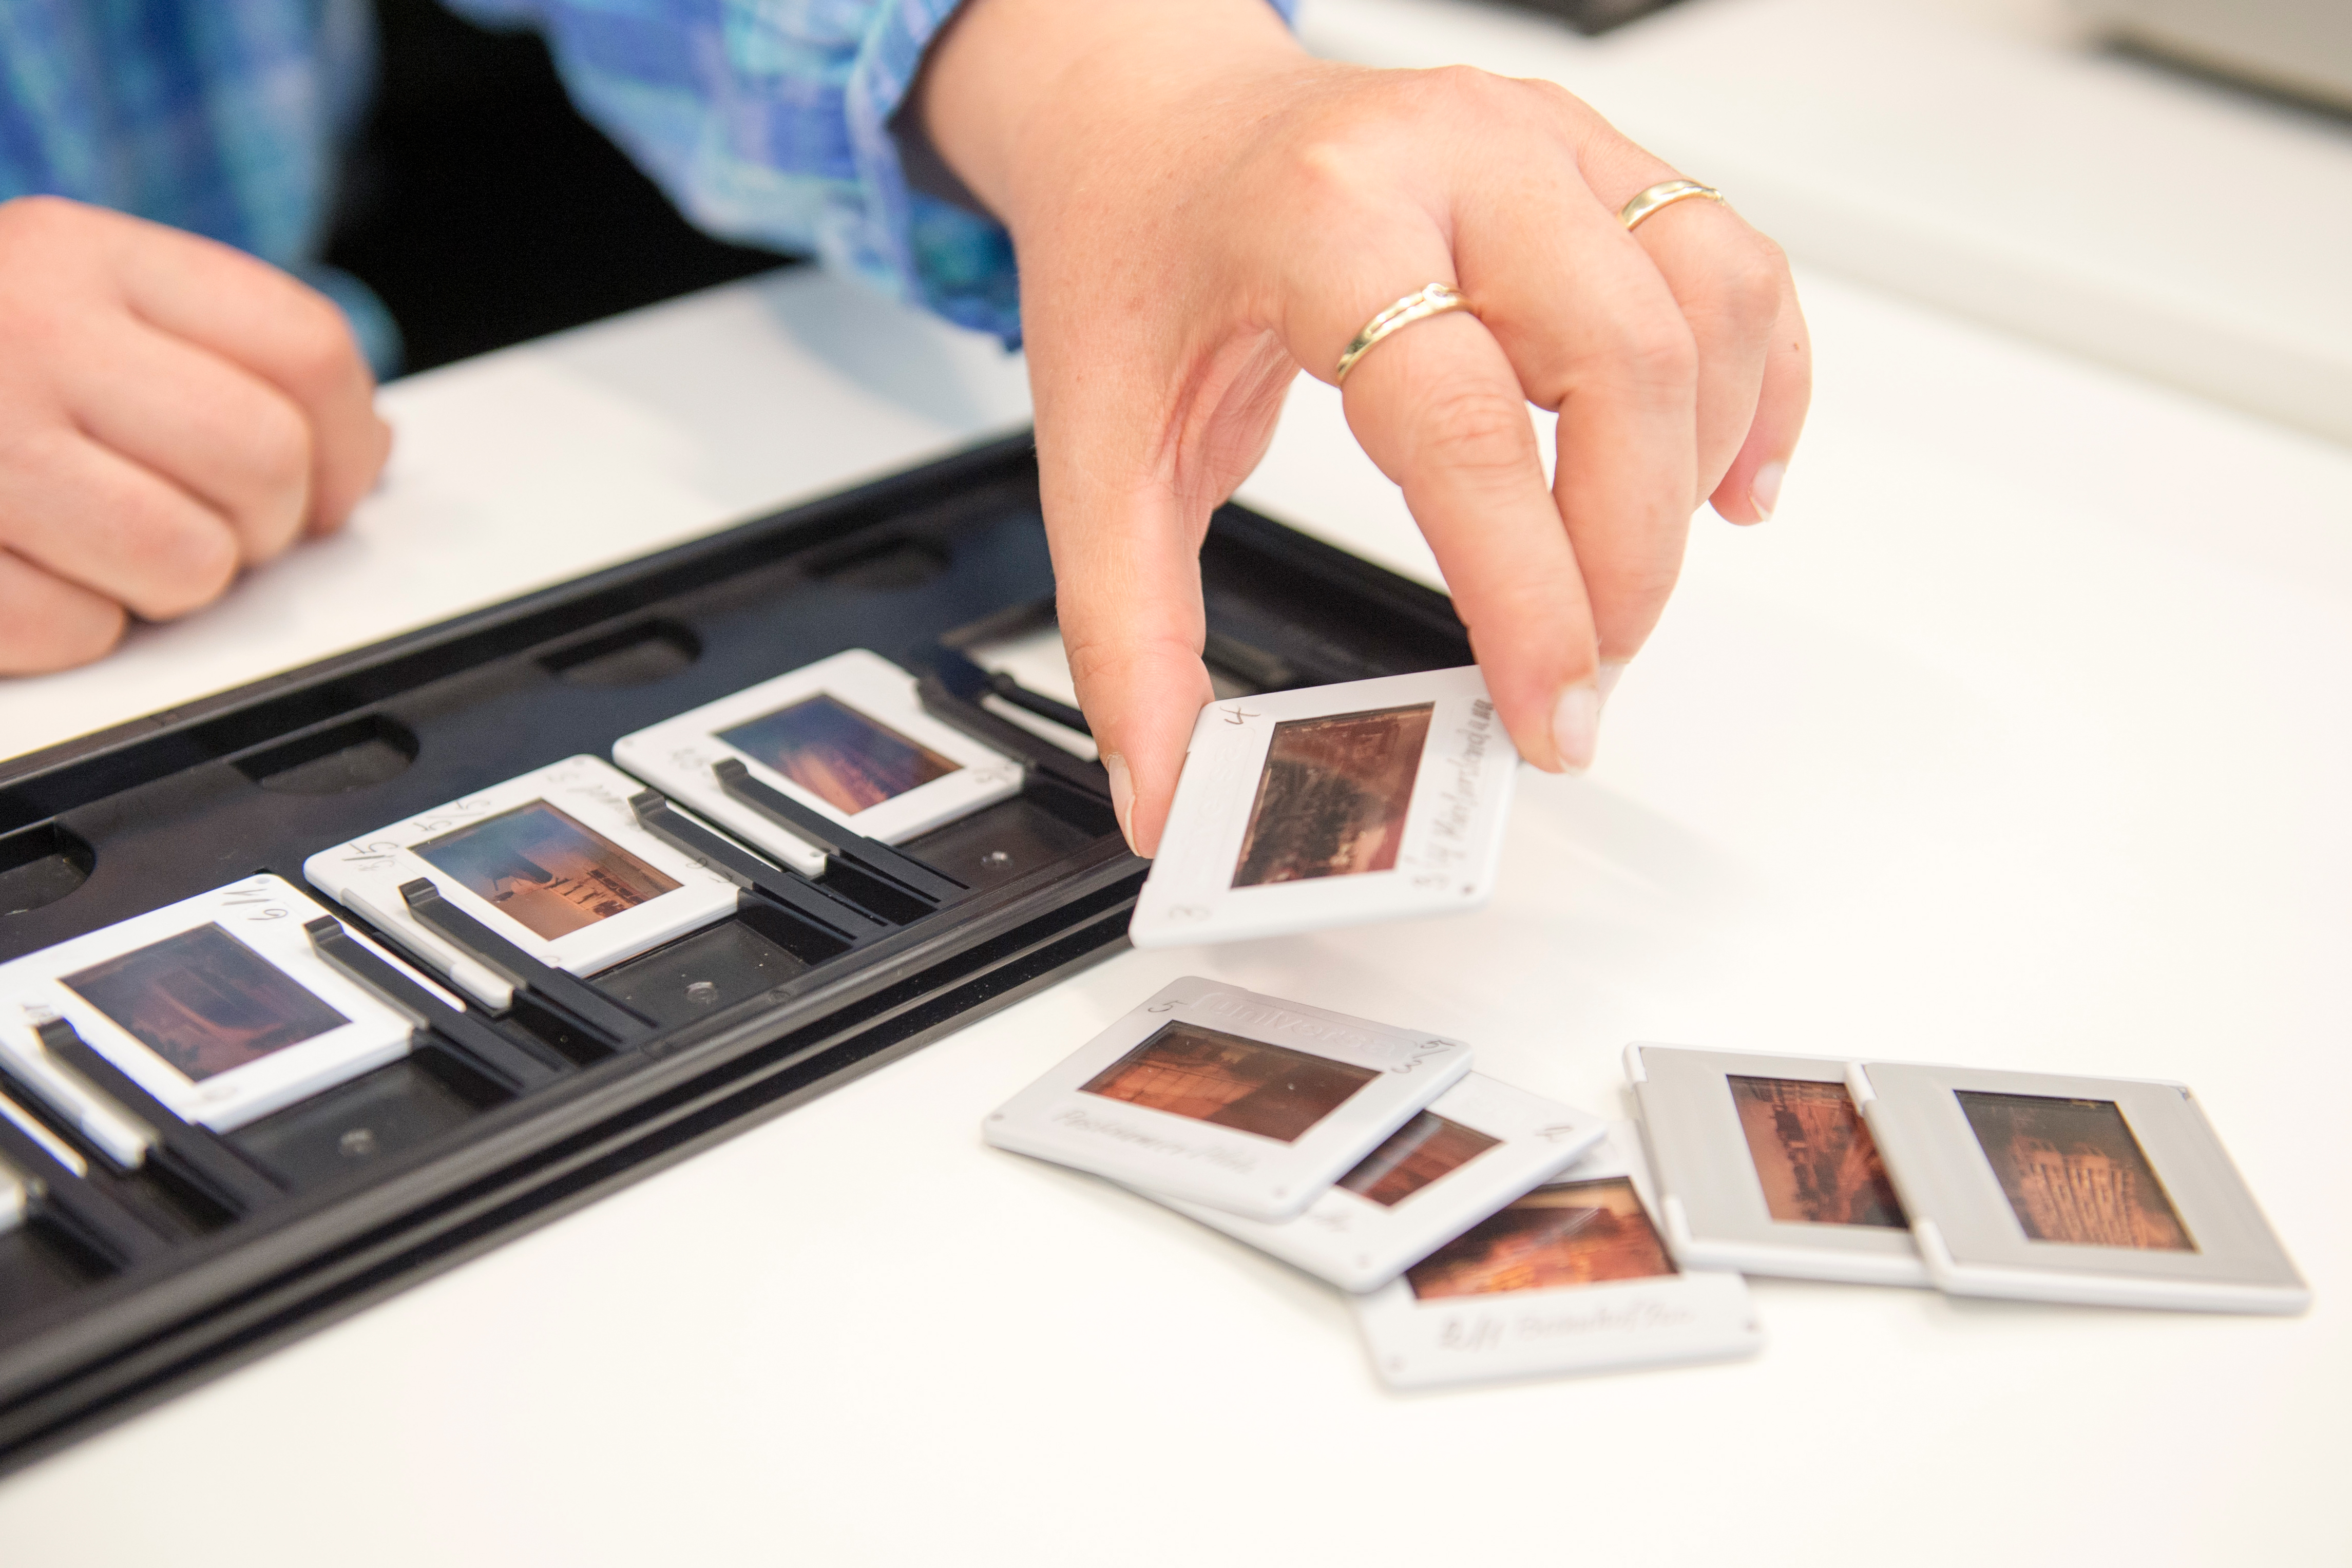 Digitalizar antiguos negativos, diapositivas y fotos en papel con sencillez  y a bajo precio